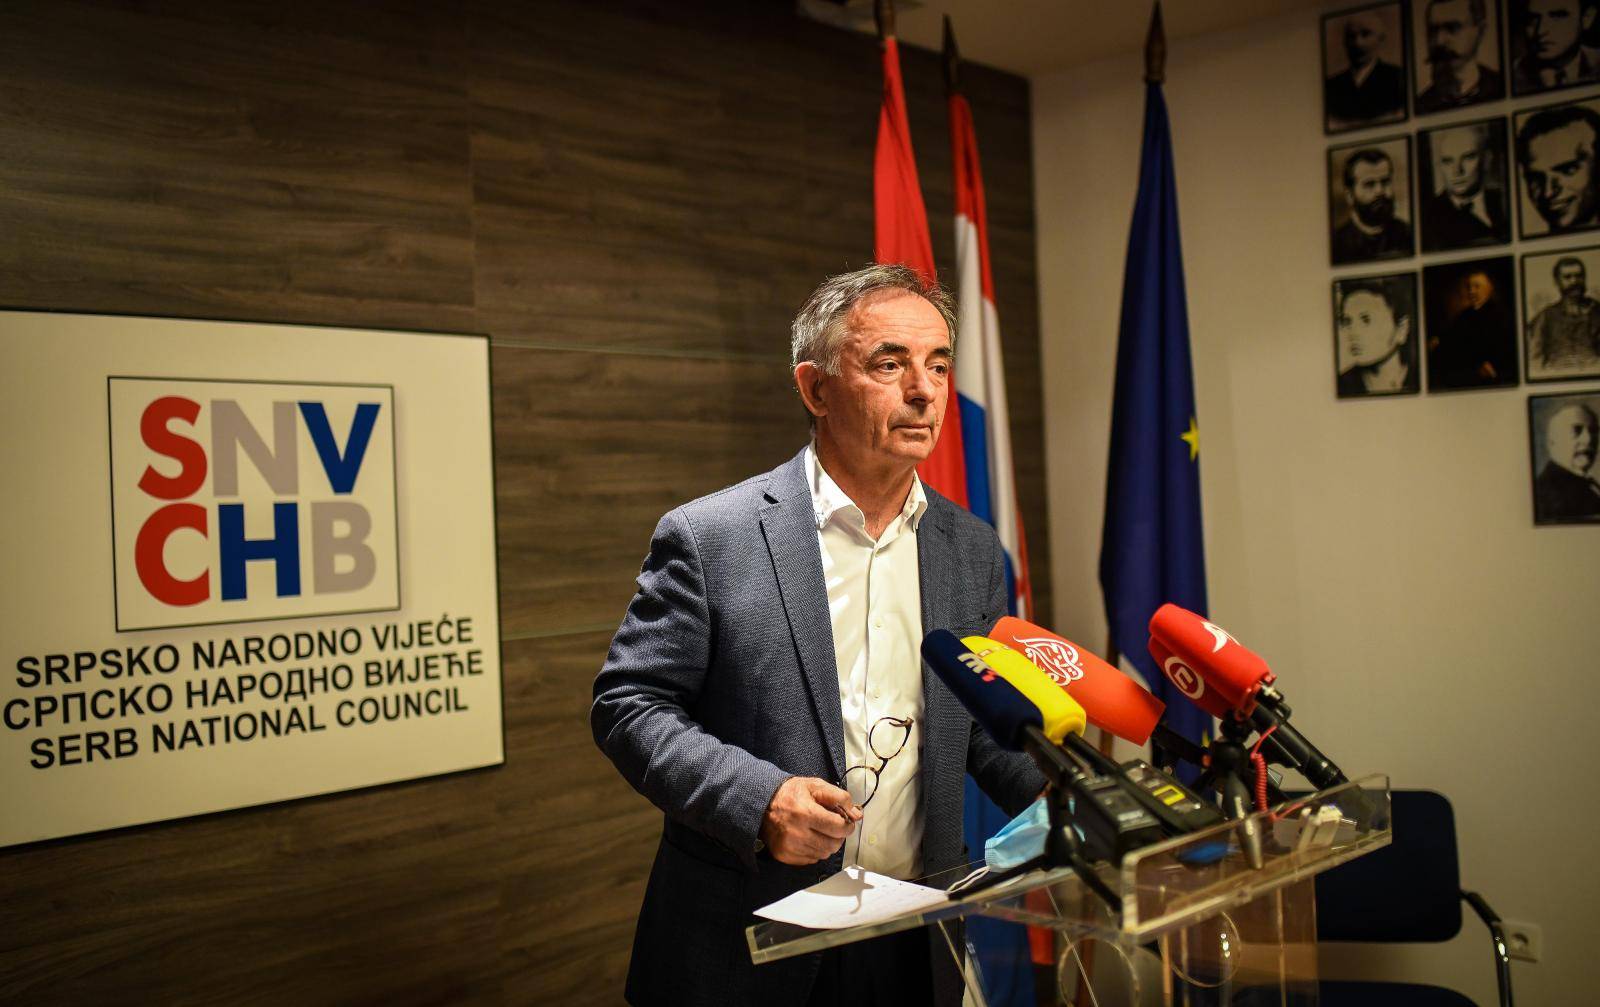 Uoči Dana srpskog jedinstva Milorad Pupovac je održao izvanrednu konferenciju za medije